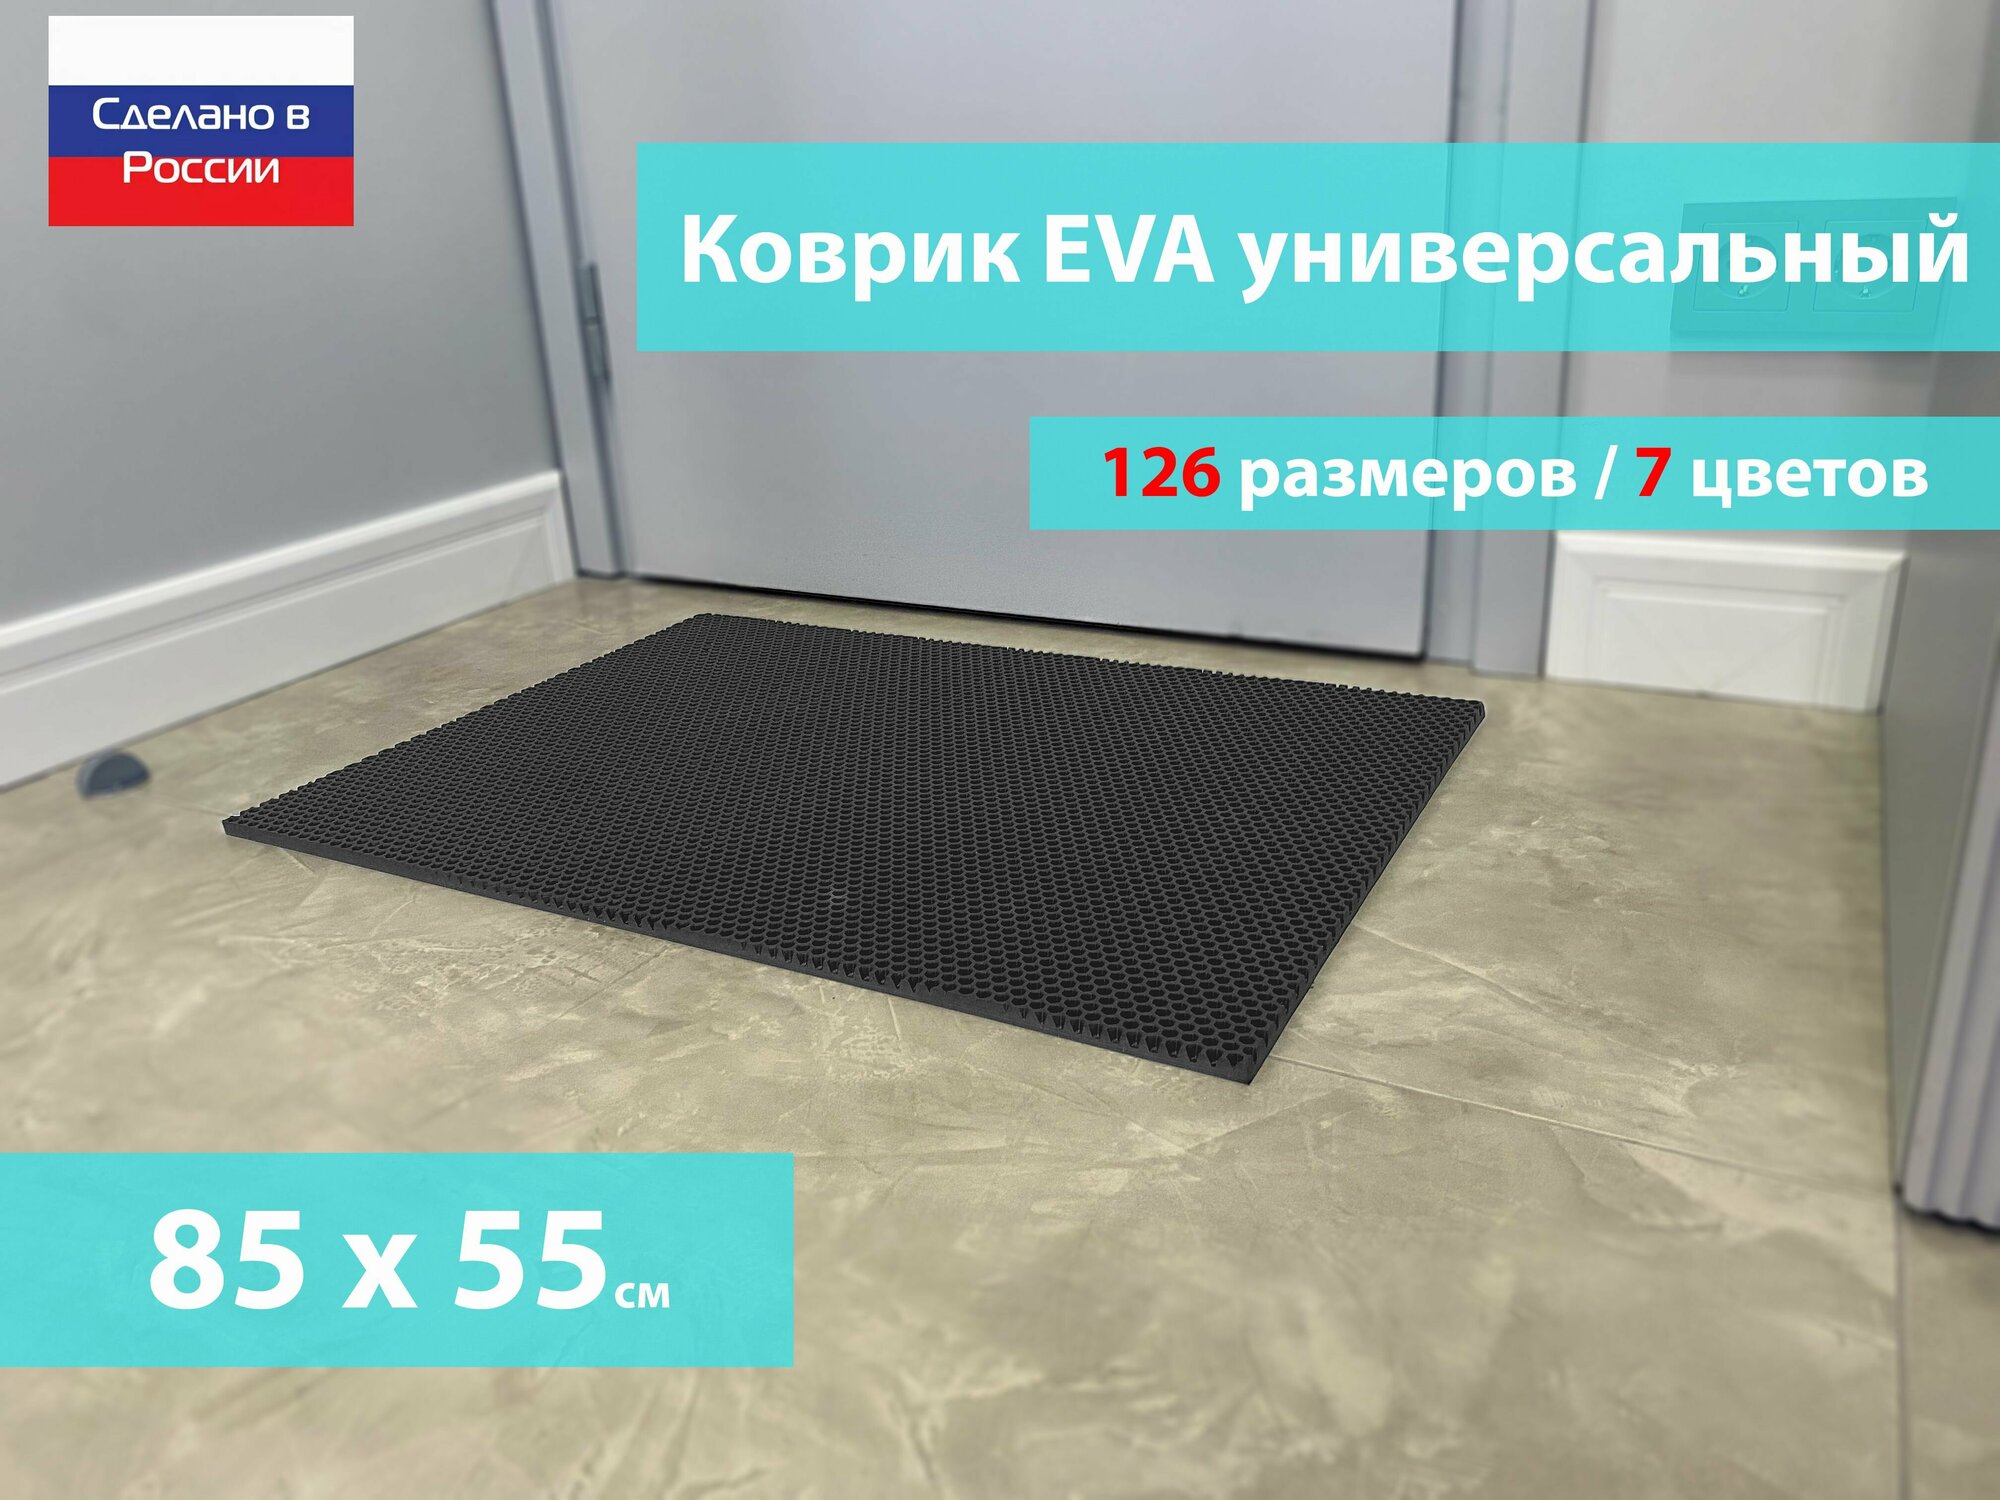 Коврик придверный EVA (ЕВА) в прихожую для обуви / Ковер ЭВА на пол перед дверью/ серый / размер 85 х 55 см